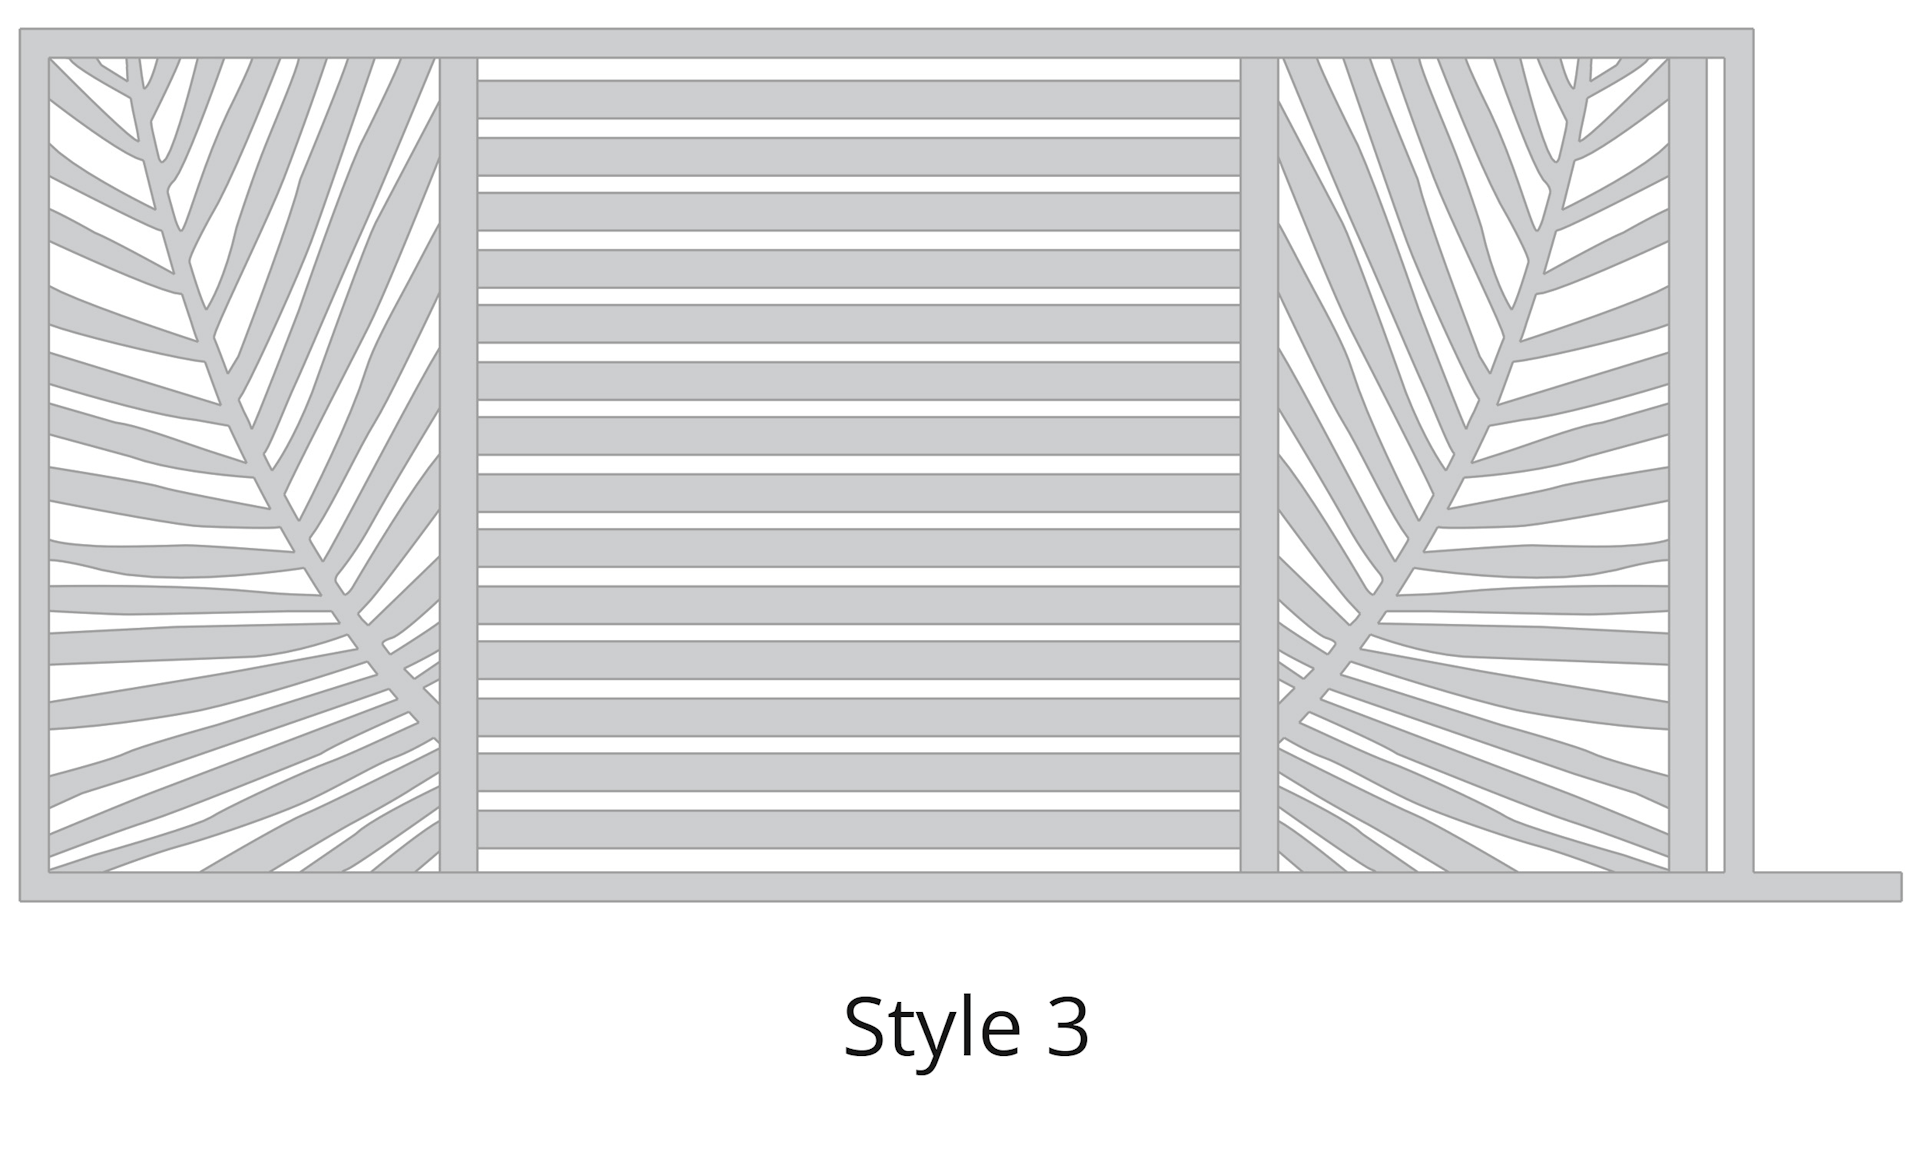 Lazer Cut Gate Design - Style-3-2 Gate